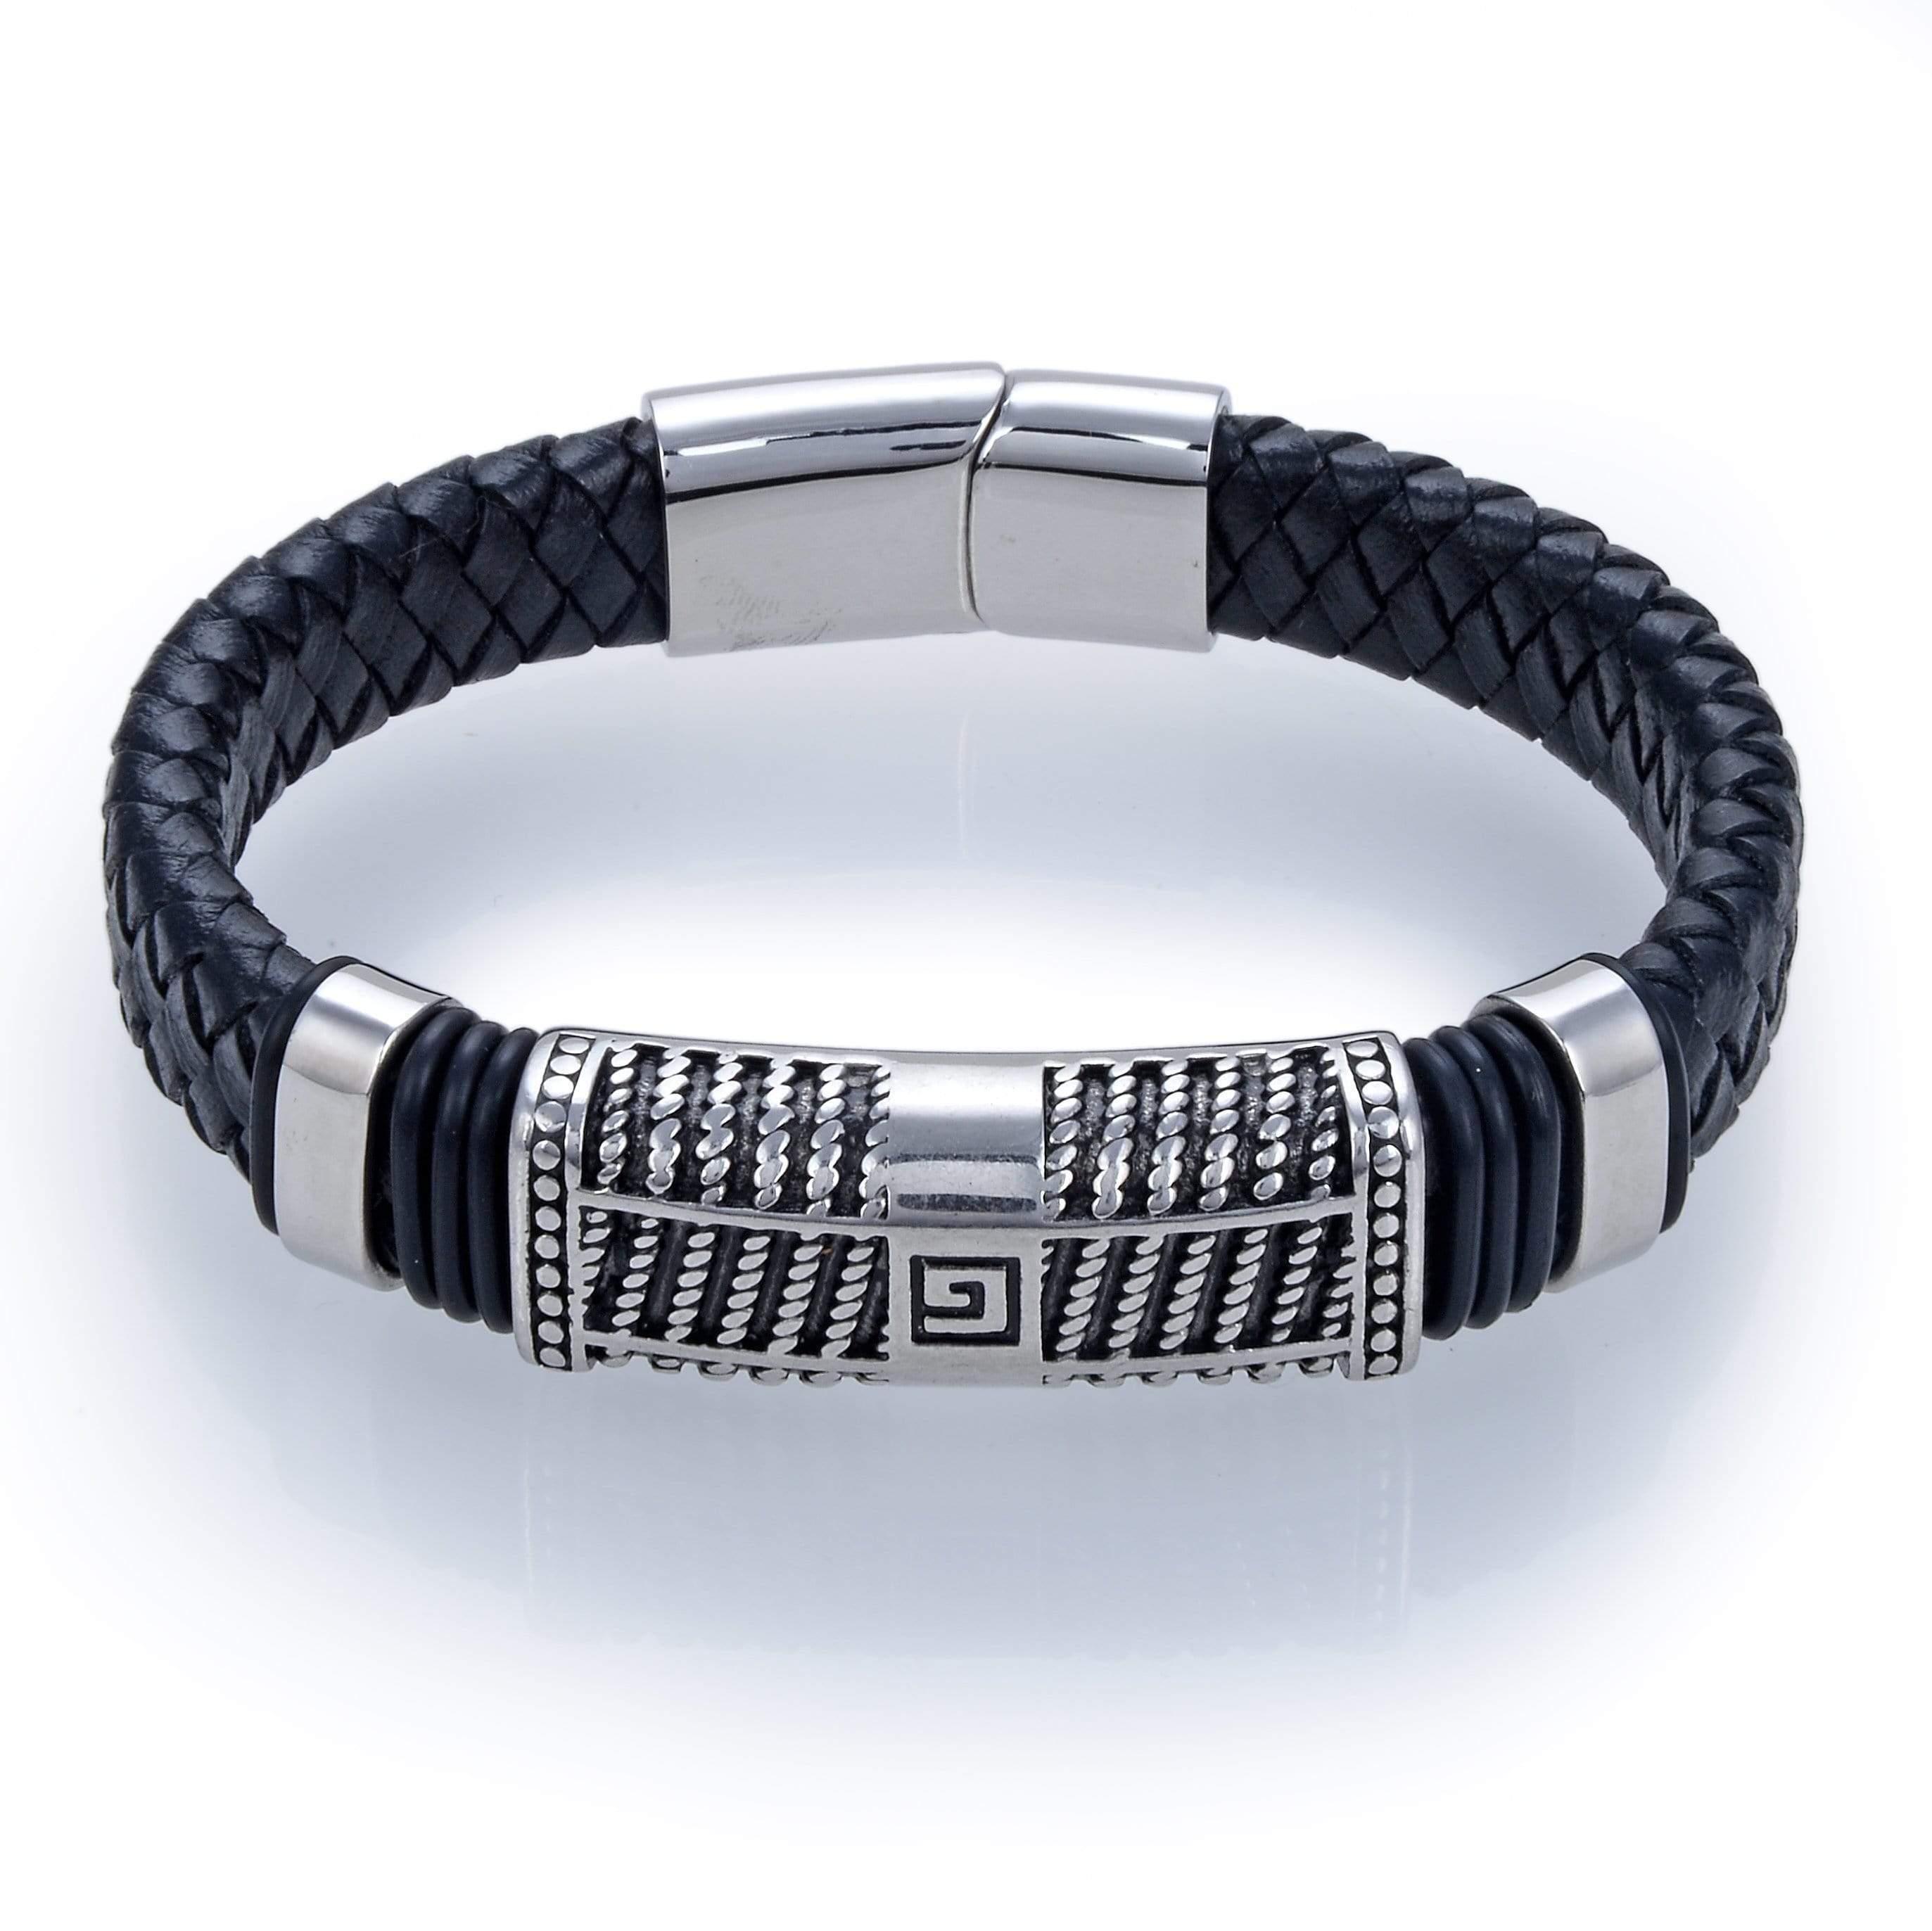 Steel Hearts G Emblem Black Leather Bracelet